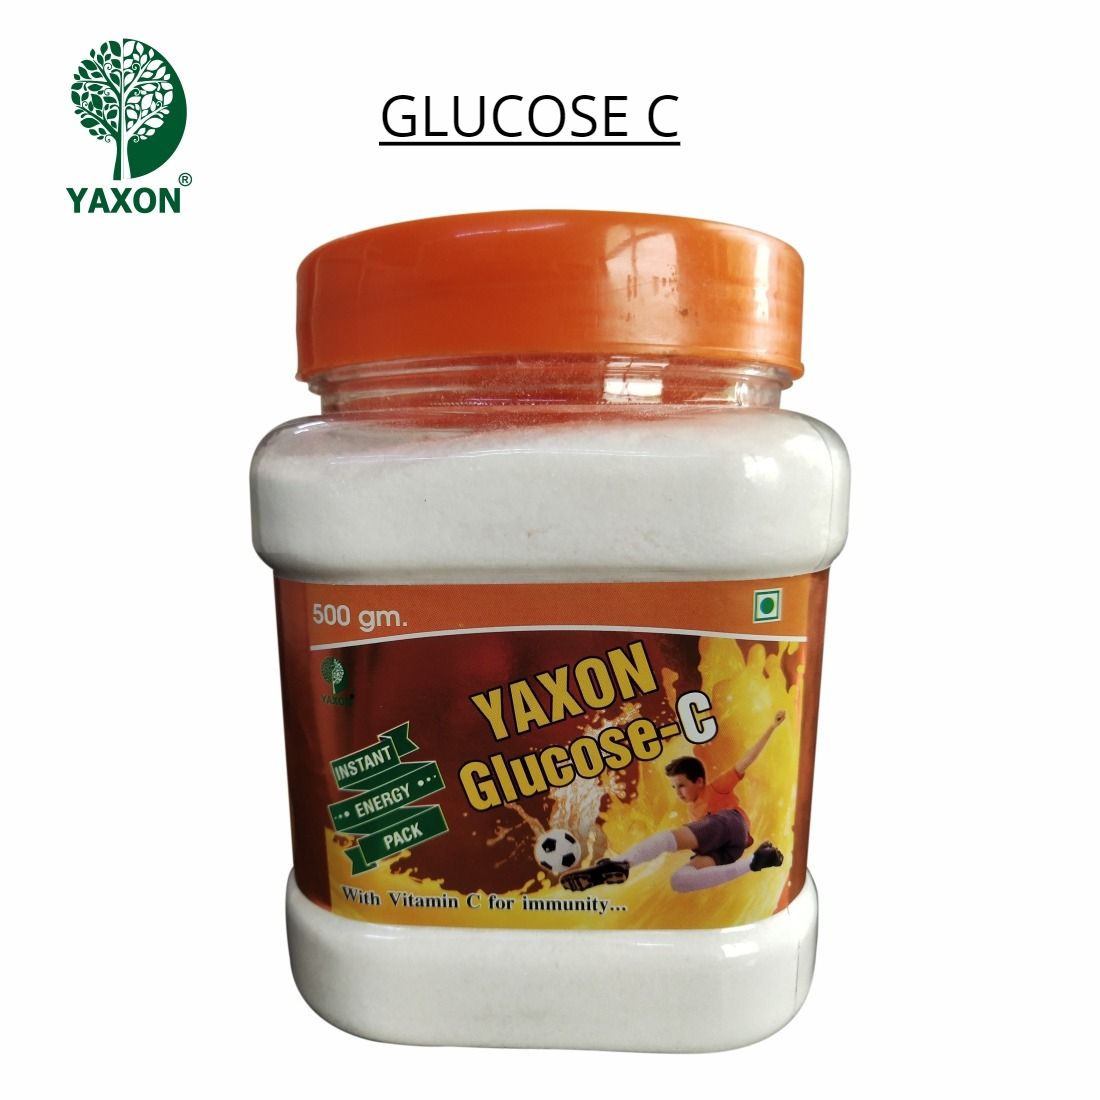 YAXON Glucose C 500gm Jar